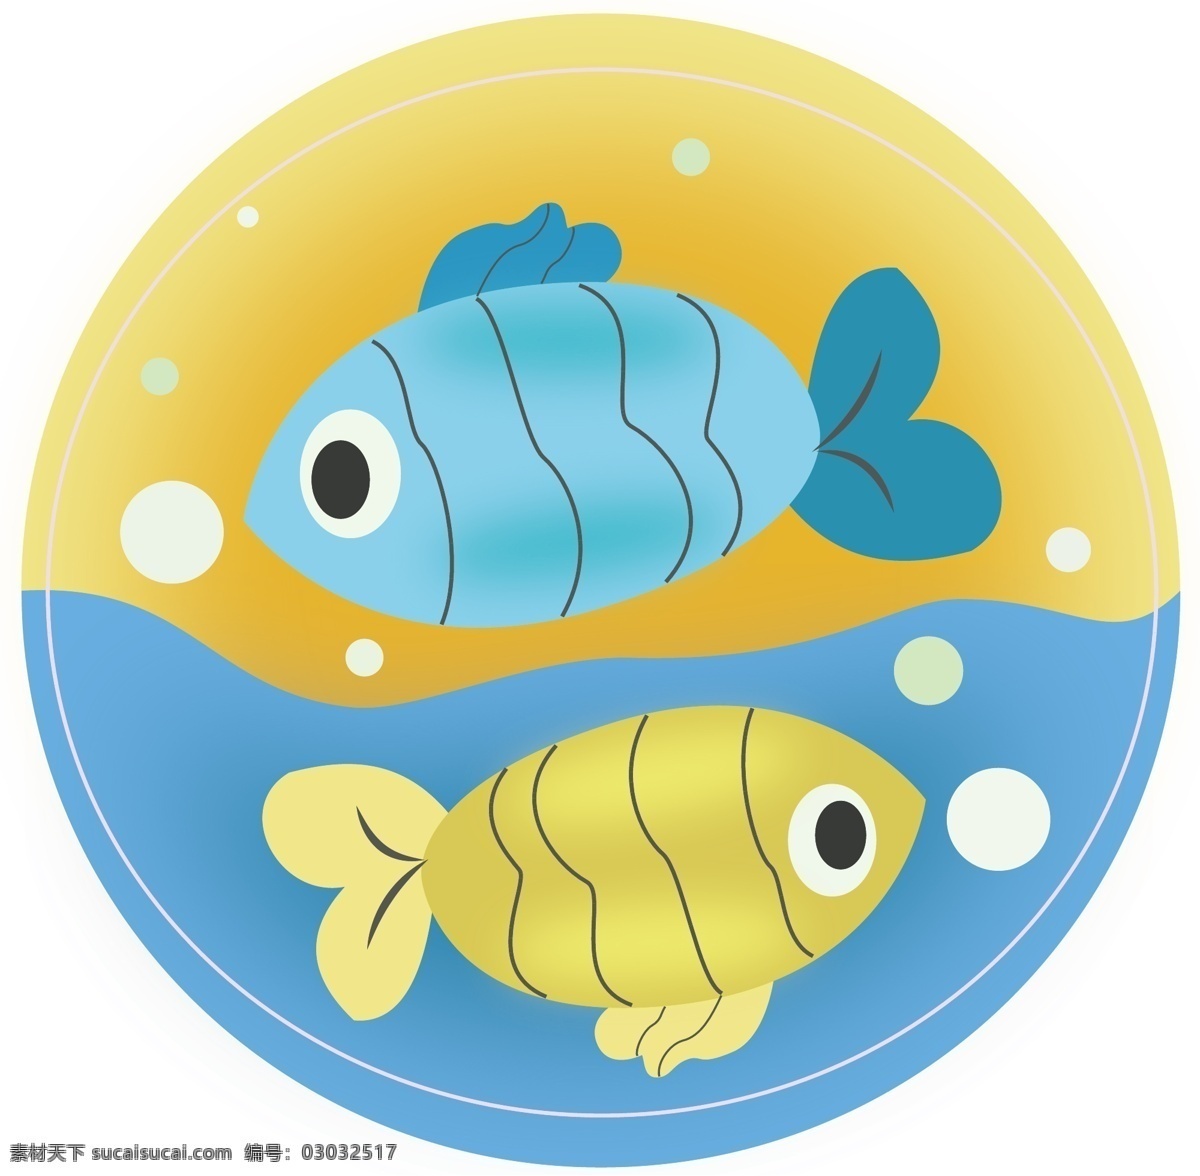 十二星座 双鱼座 图标 扁平风 可爱 黄色 蓝色 小清新 圆形 气泡 带投影 实用型